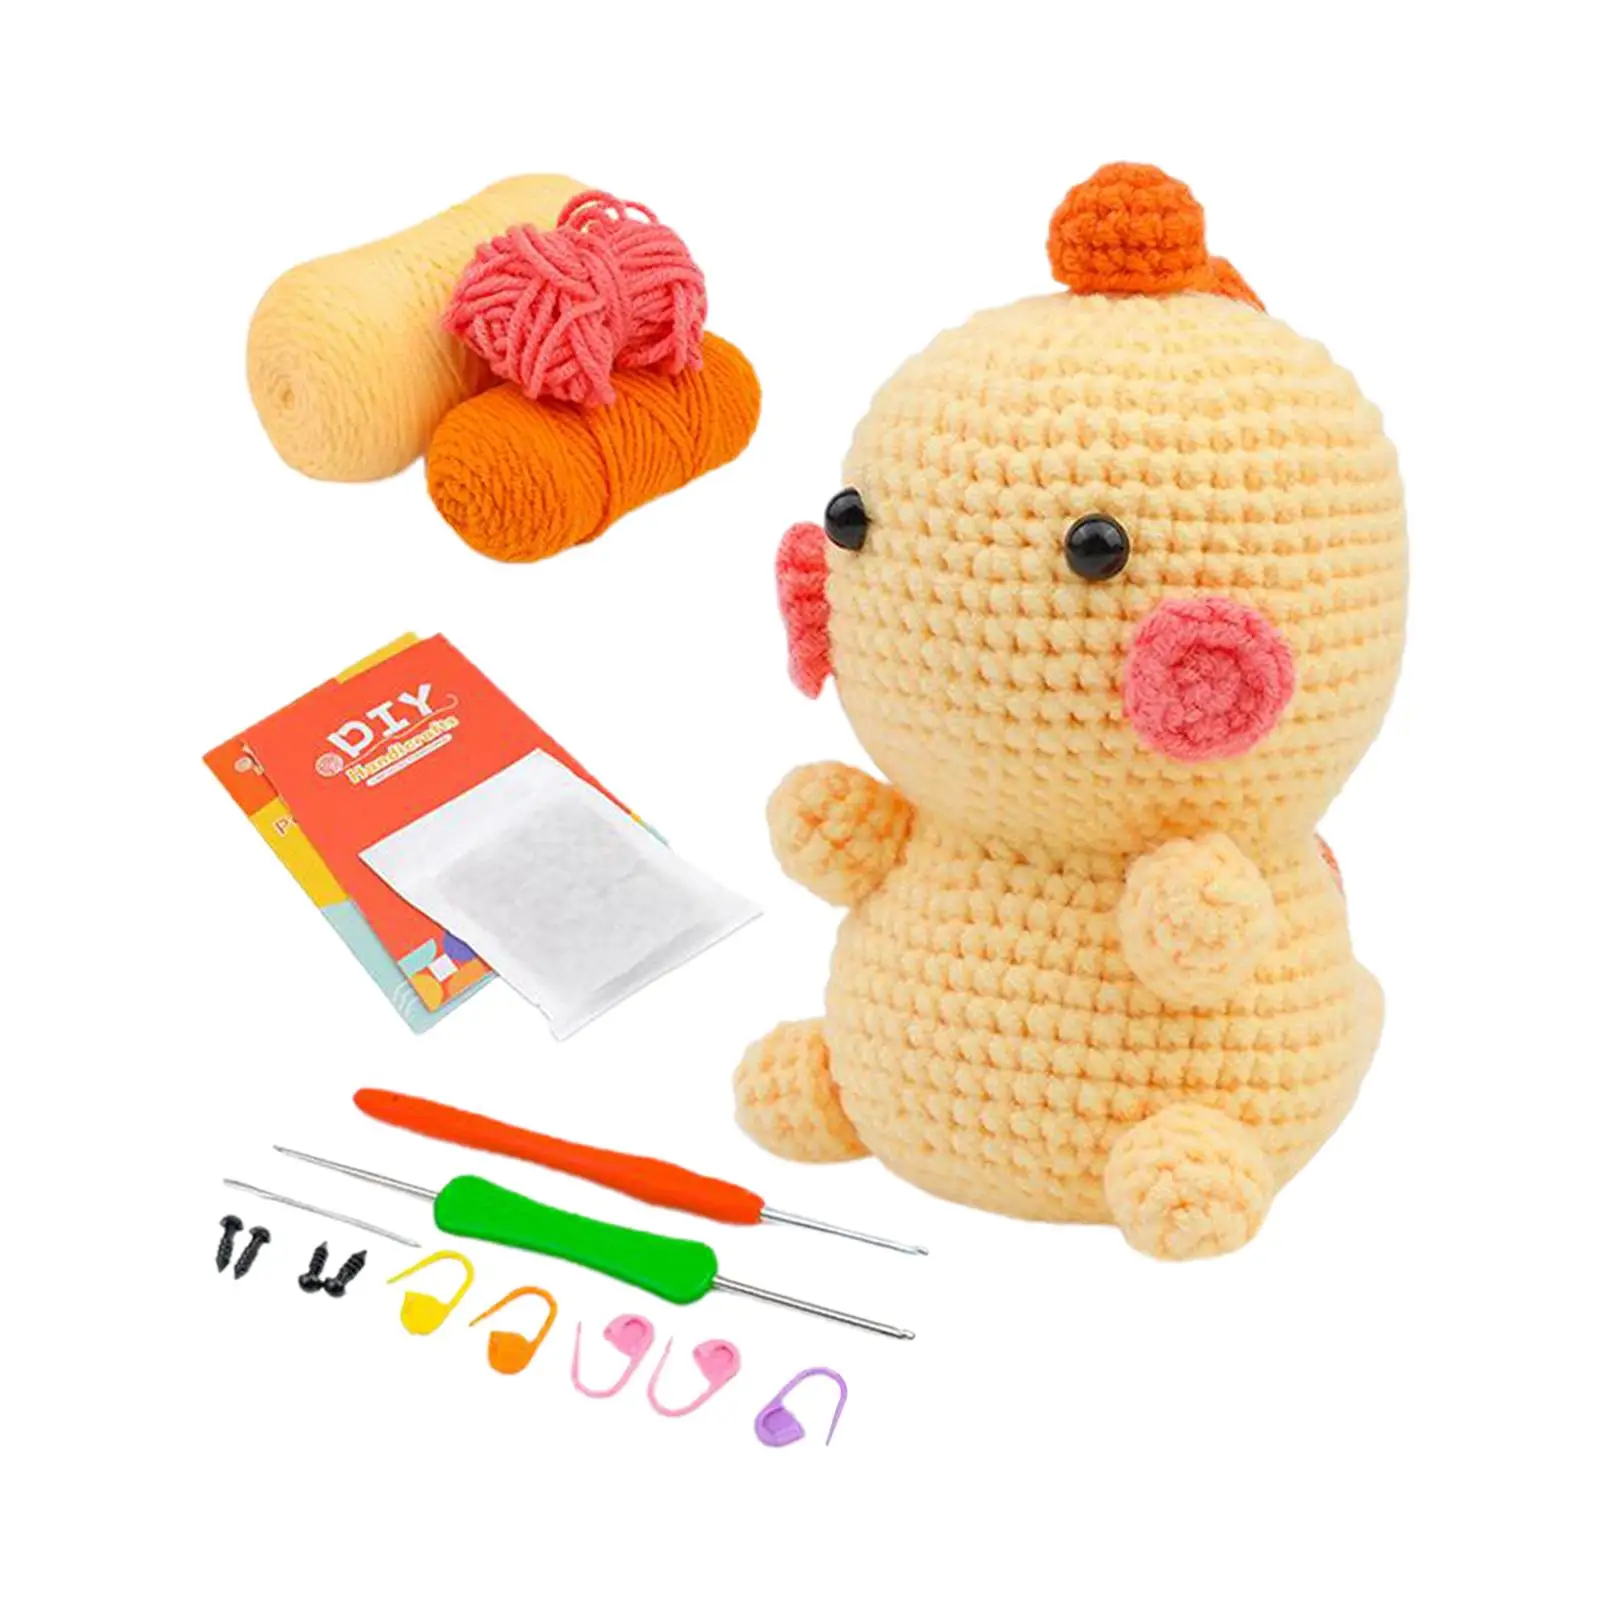 Crochet Animal Kit Includes Yarn, Hook Crochet Kit for Beginners Dinosaur Doll Material Package for Knitting Lover Kids Adults